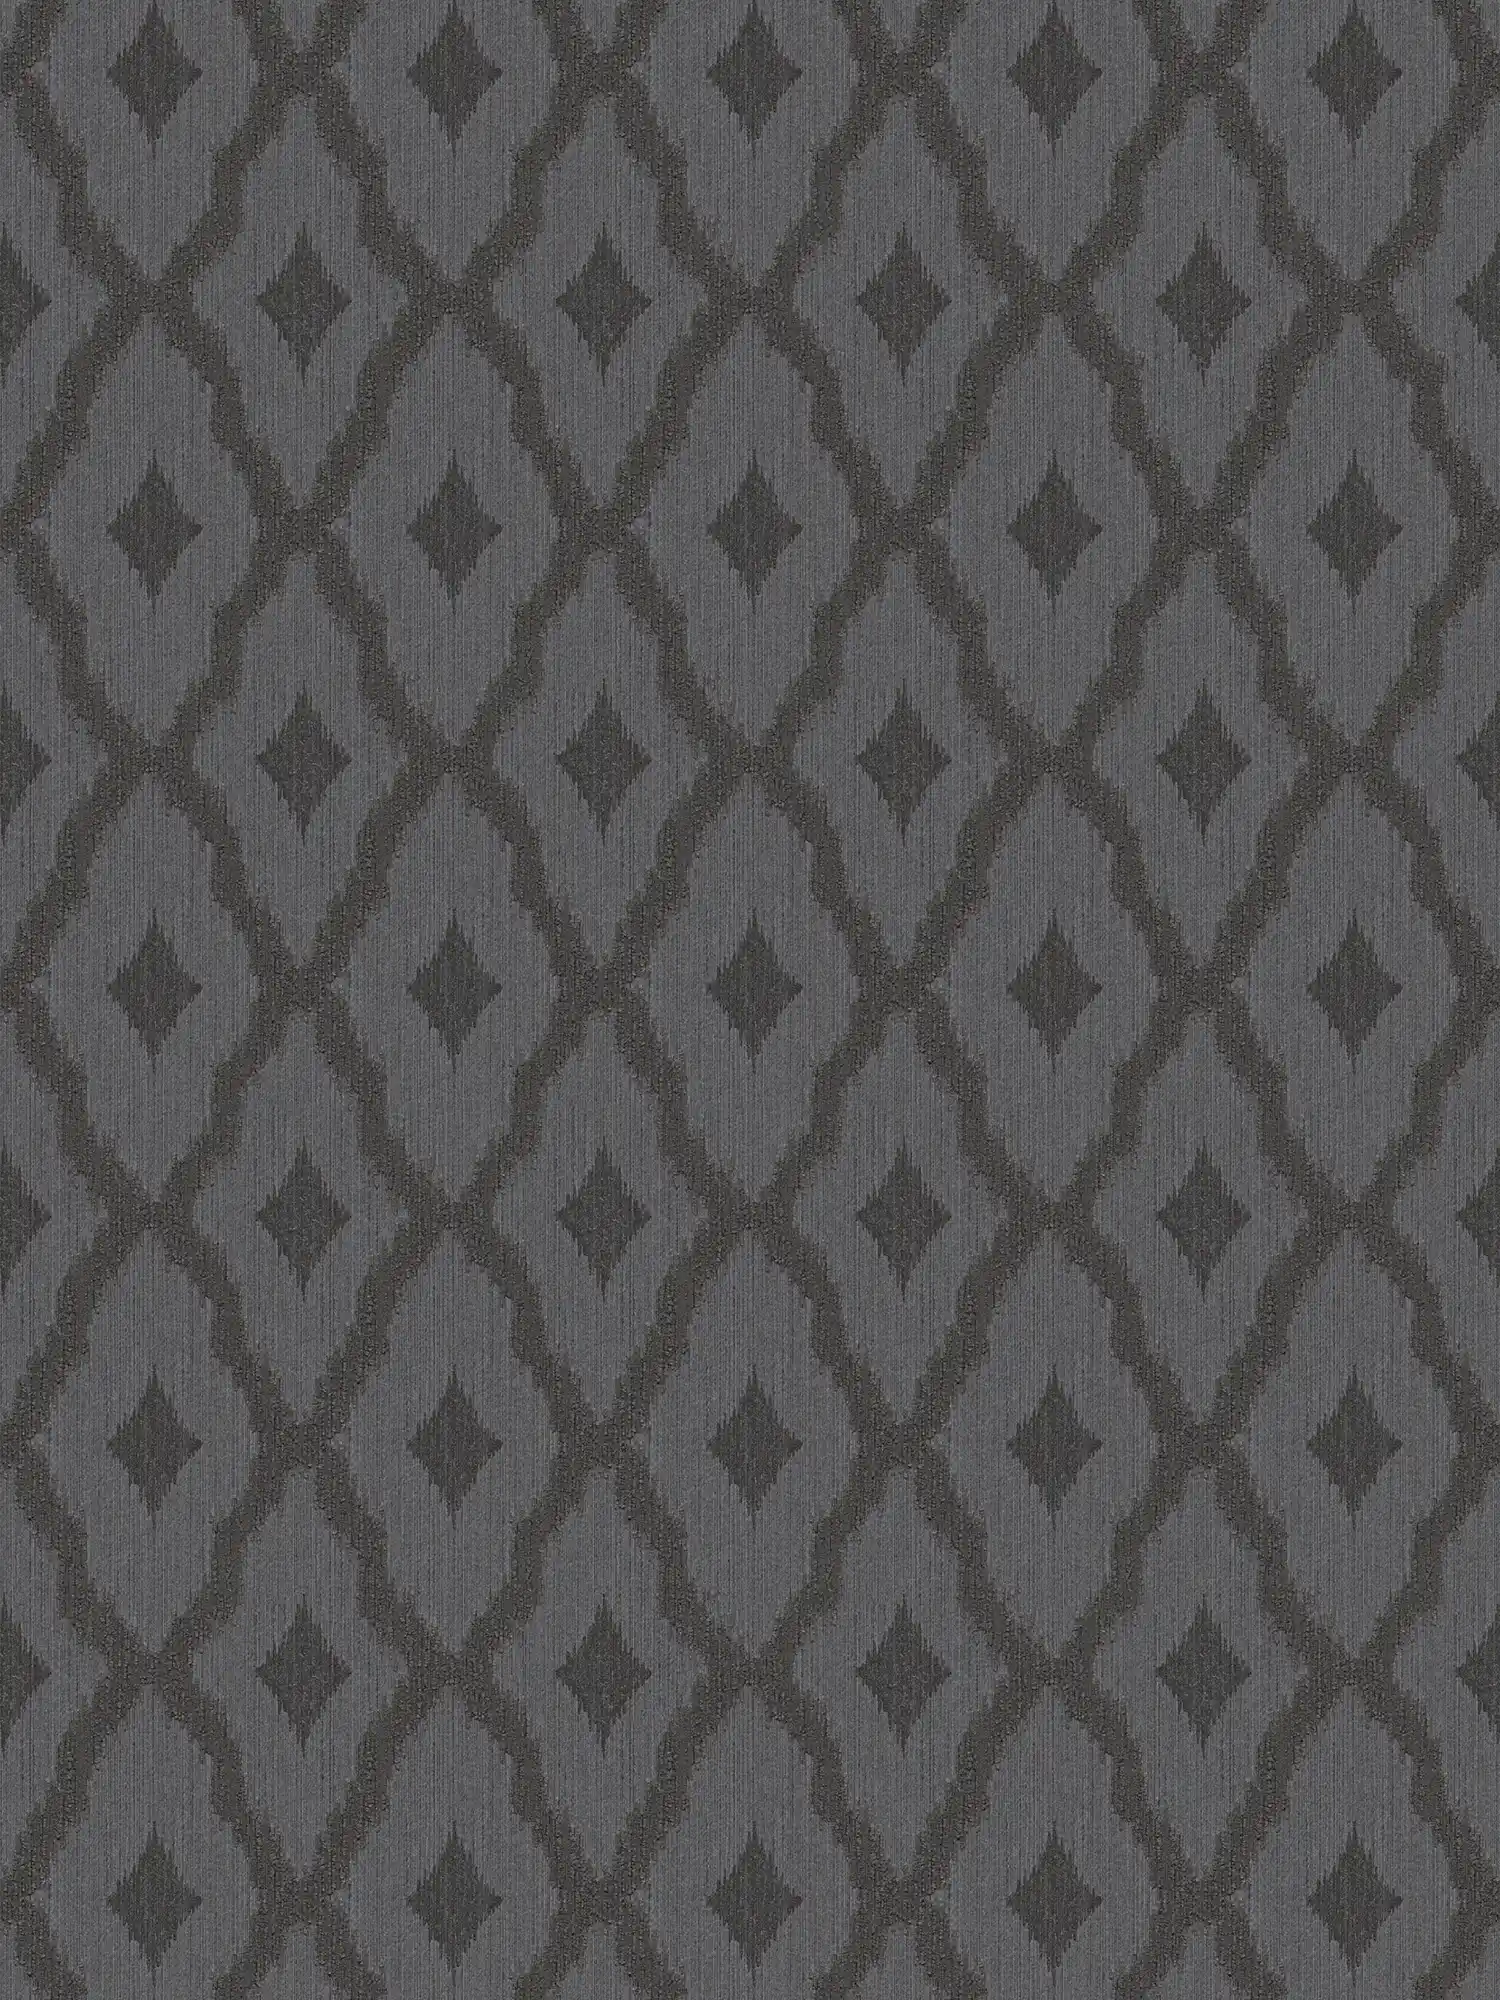 Ikat-stijl patroonbehang met textielstructuur - bruin
